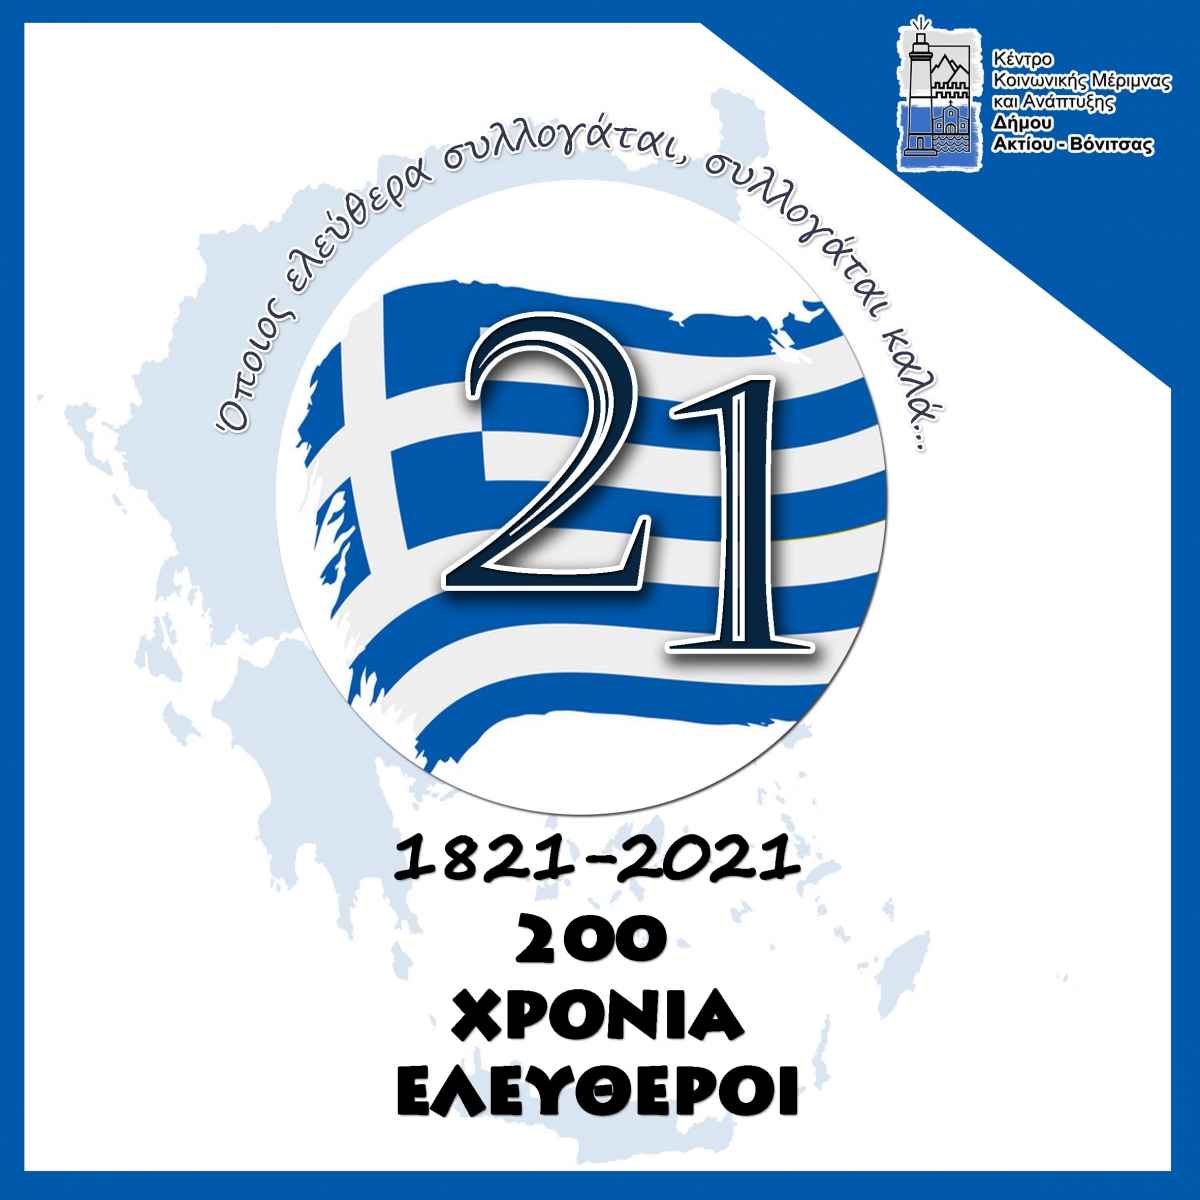 Εκδηλώσεις για την 25η Μαρτίου στον Δήμο Ακτίου - Βόνιτσας (Τρι 23 - Πεμ 25/3/2021)